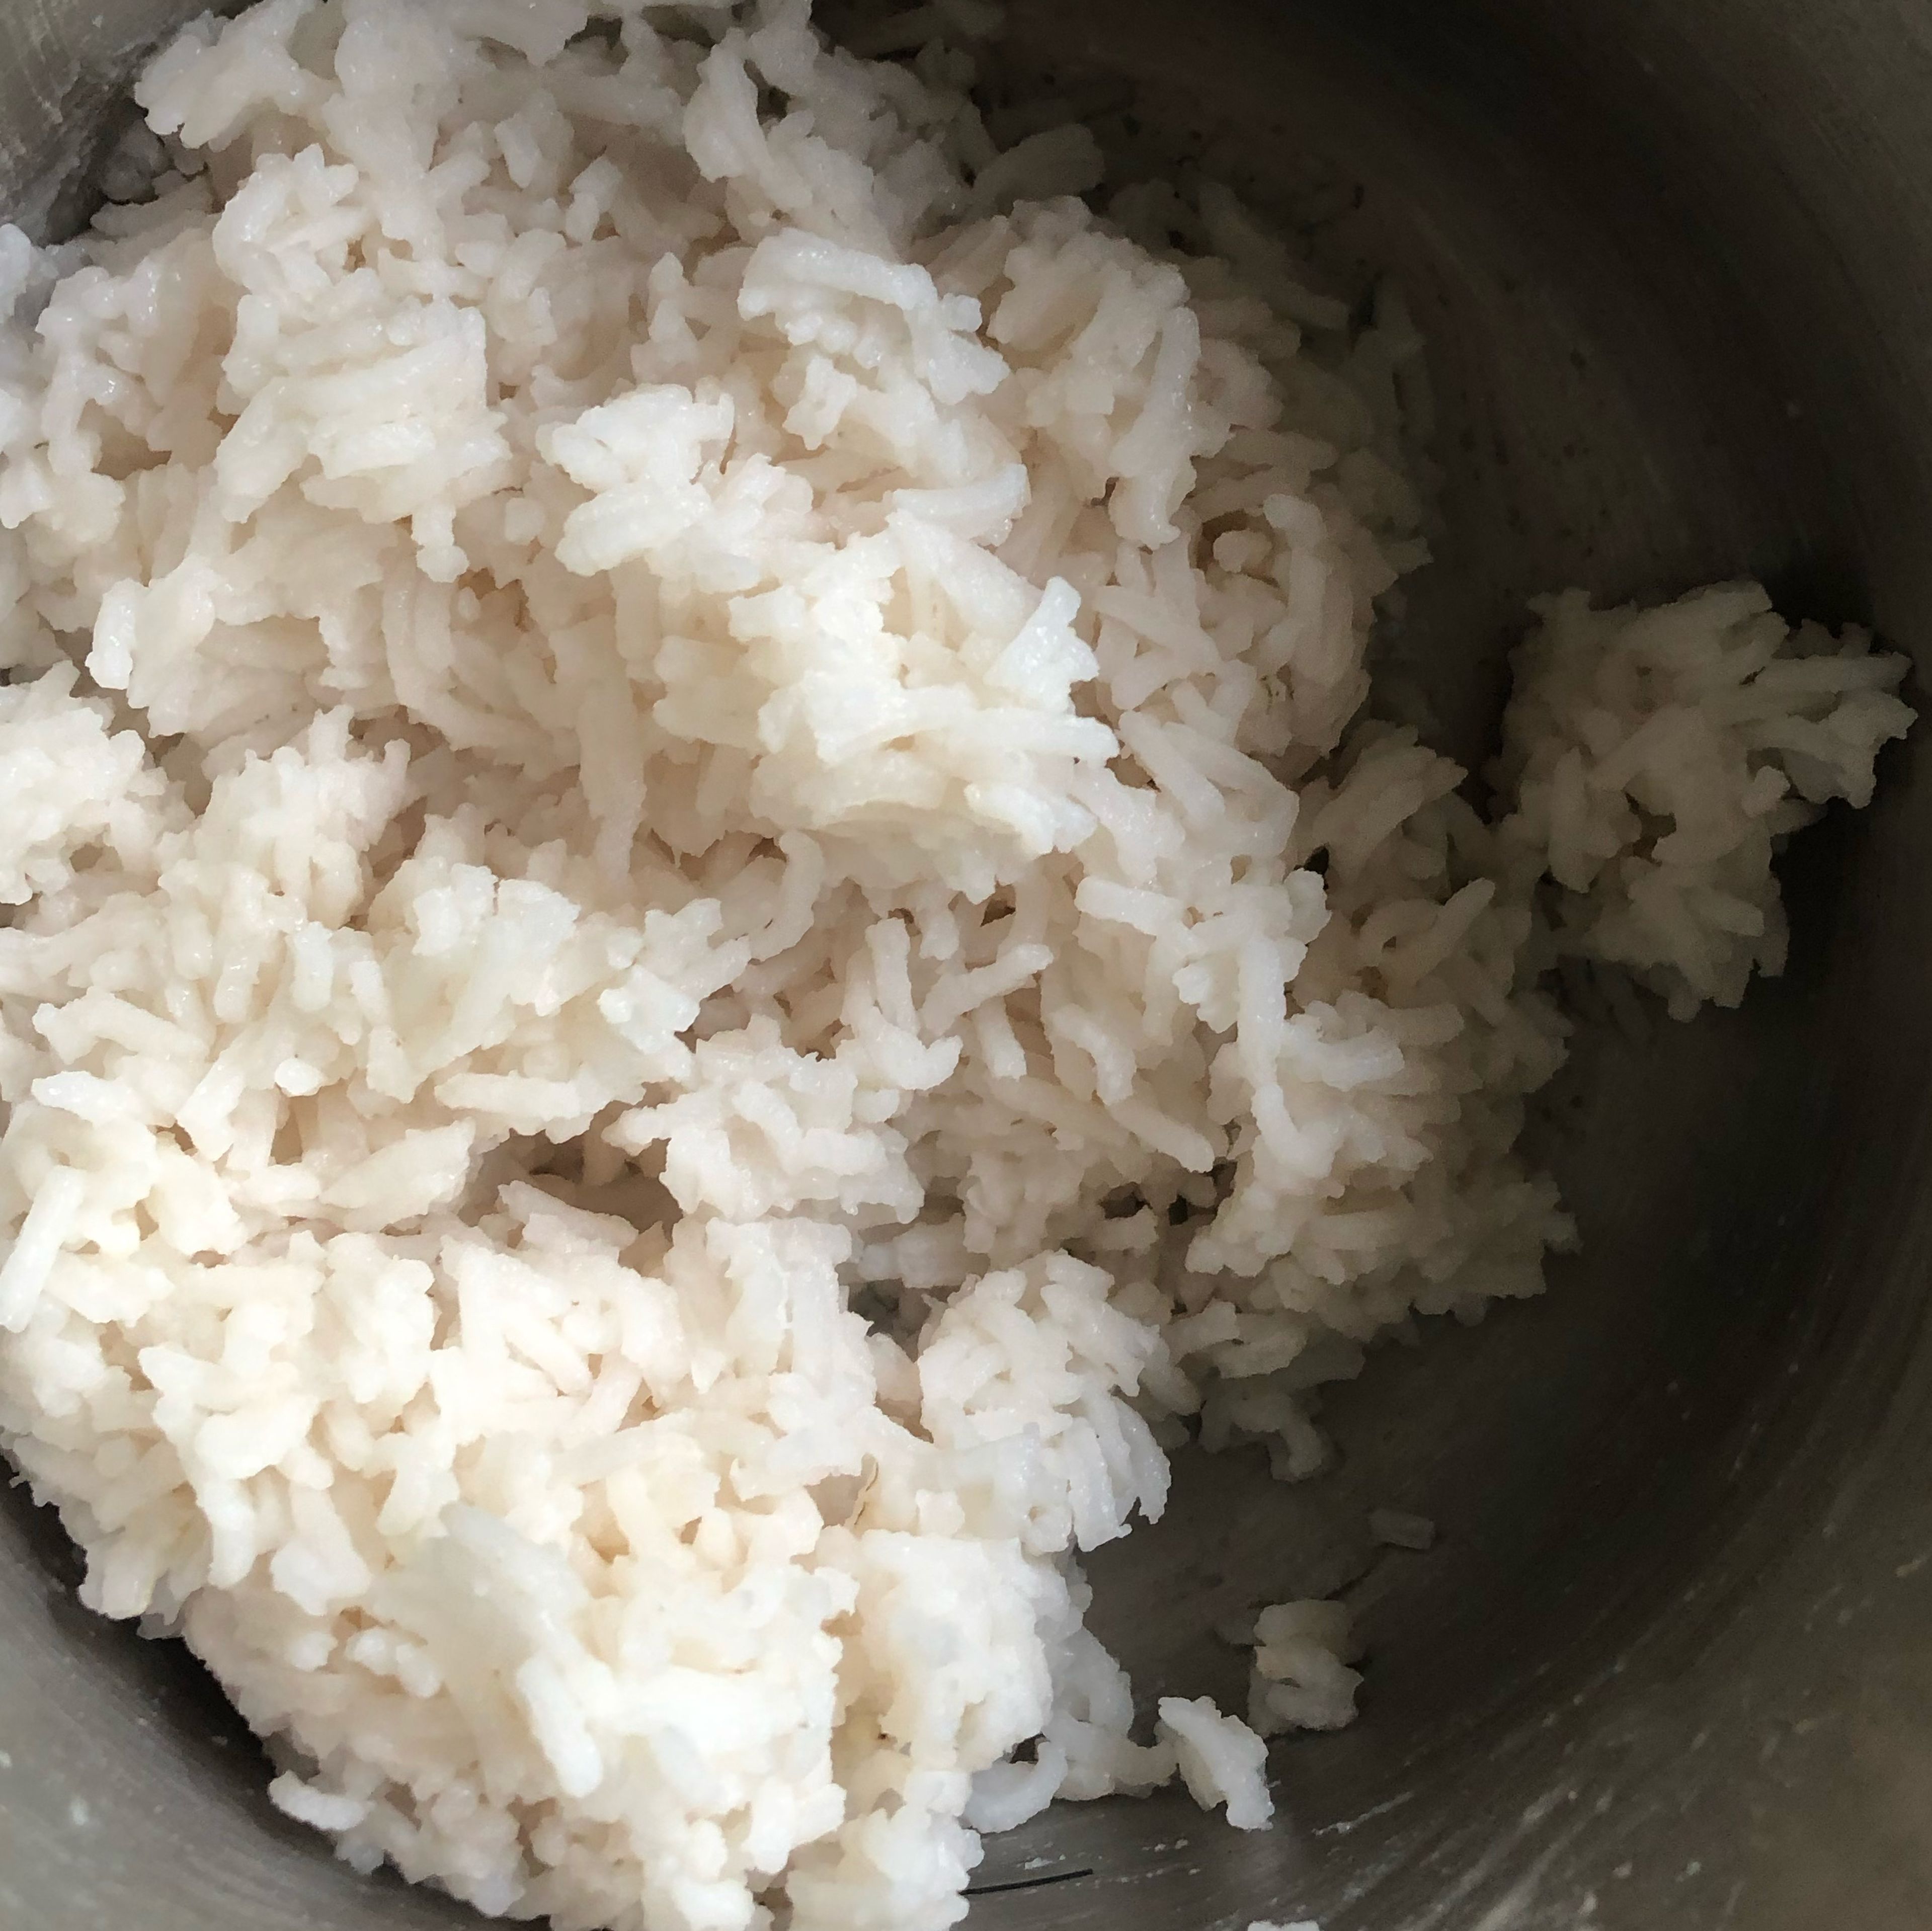 Nach den 20 Minuten den Topf mit dem Reis von der Kochplatte runter stellen. Den Deckel ab und den Reis auflockern. Weitere 10 Min ruhen lassen mit schräg aufliegenden Deckel. 